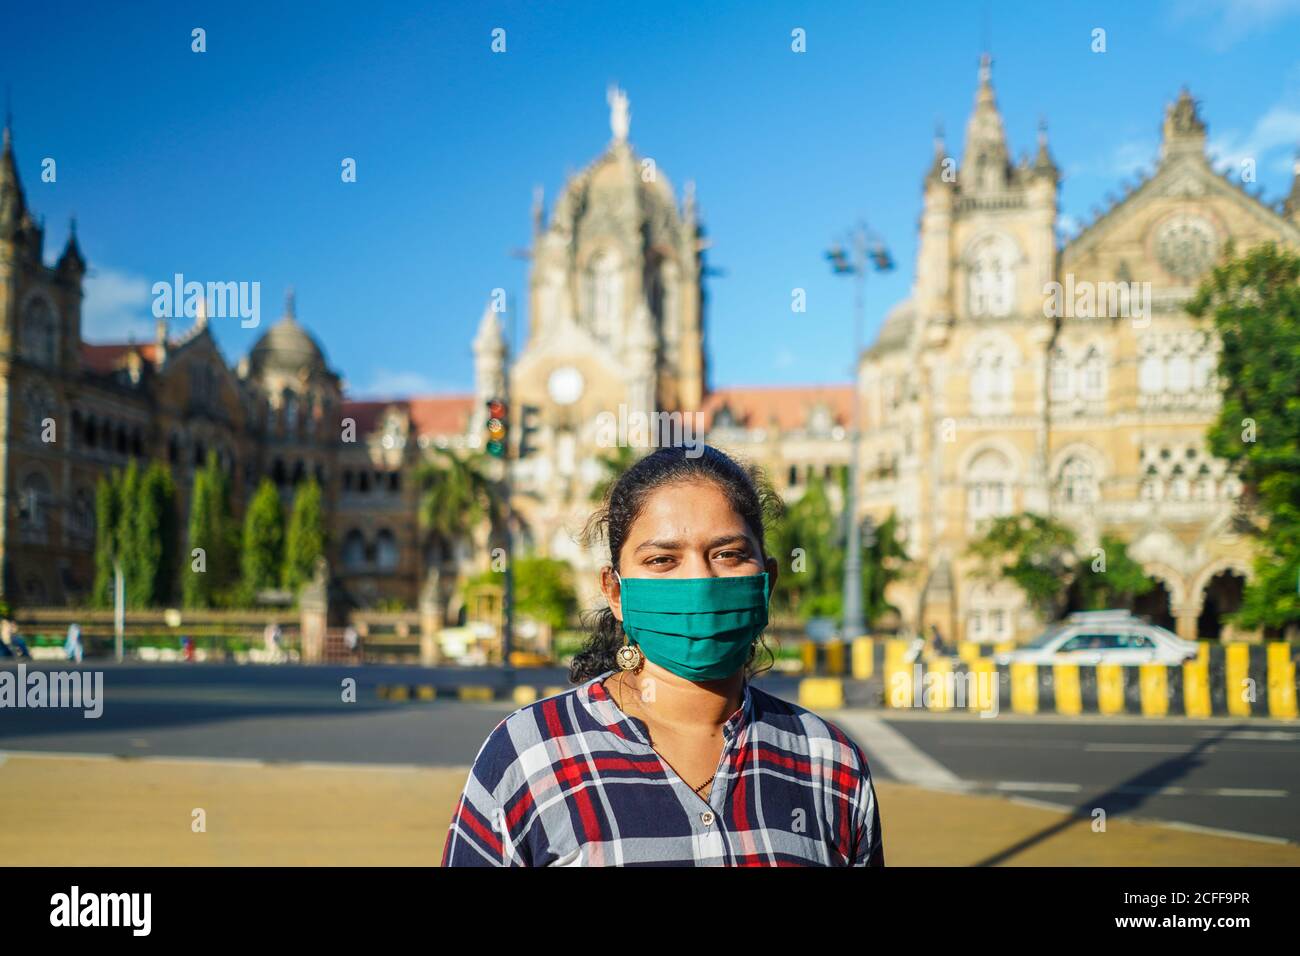 Jeune fille indienne portant un masque à Mumbai devant la gare de Chhatrapati Shivaji maharaj Covid 19 situation pandémique 2020 Banque D'Images